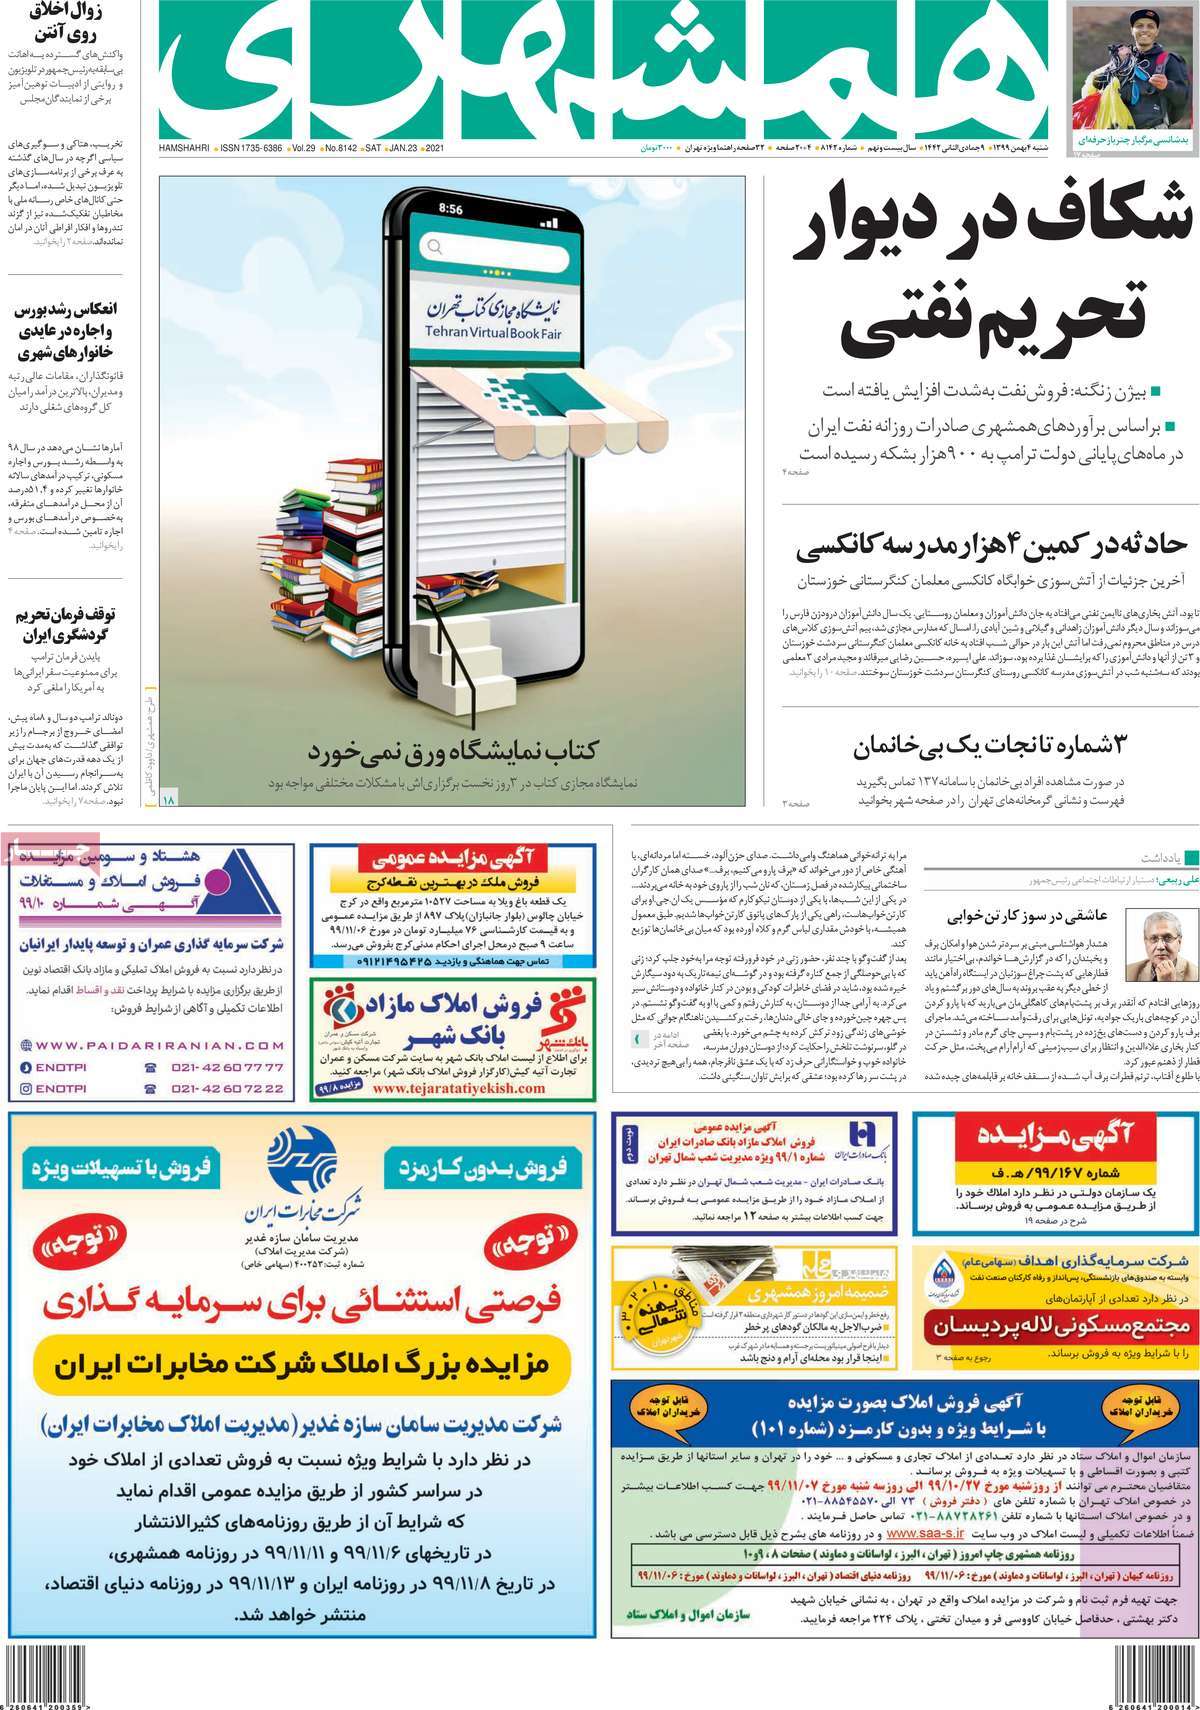 فرهنگ و هنر در صفحه اول روزنامه ها- شنبه 4 بهمن ماه 1399